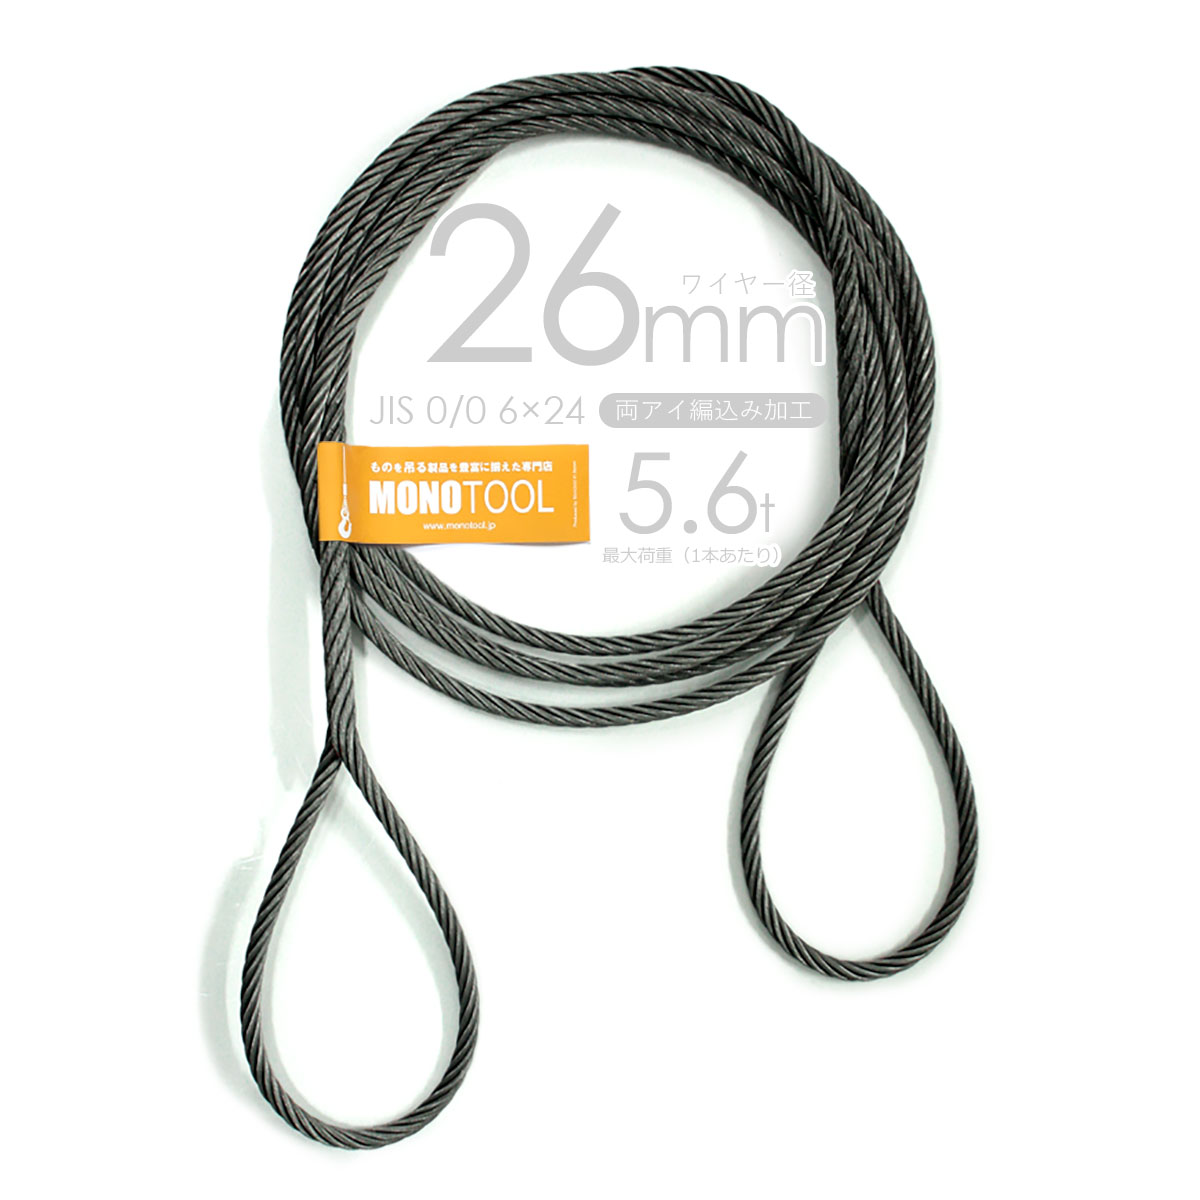 編み込み・フレミッシュ加工 JIS黒(O/O) 26mm(8.5分) 玉掛ワイヤロープ 